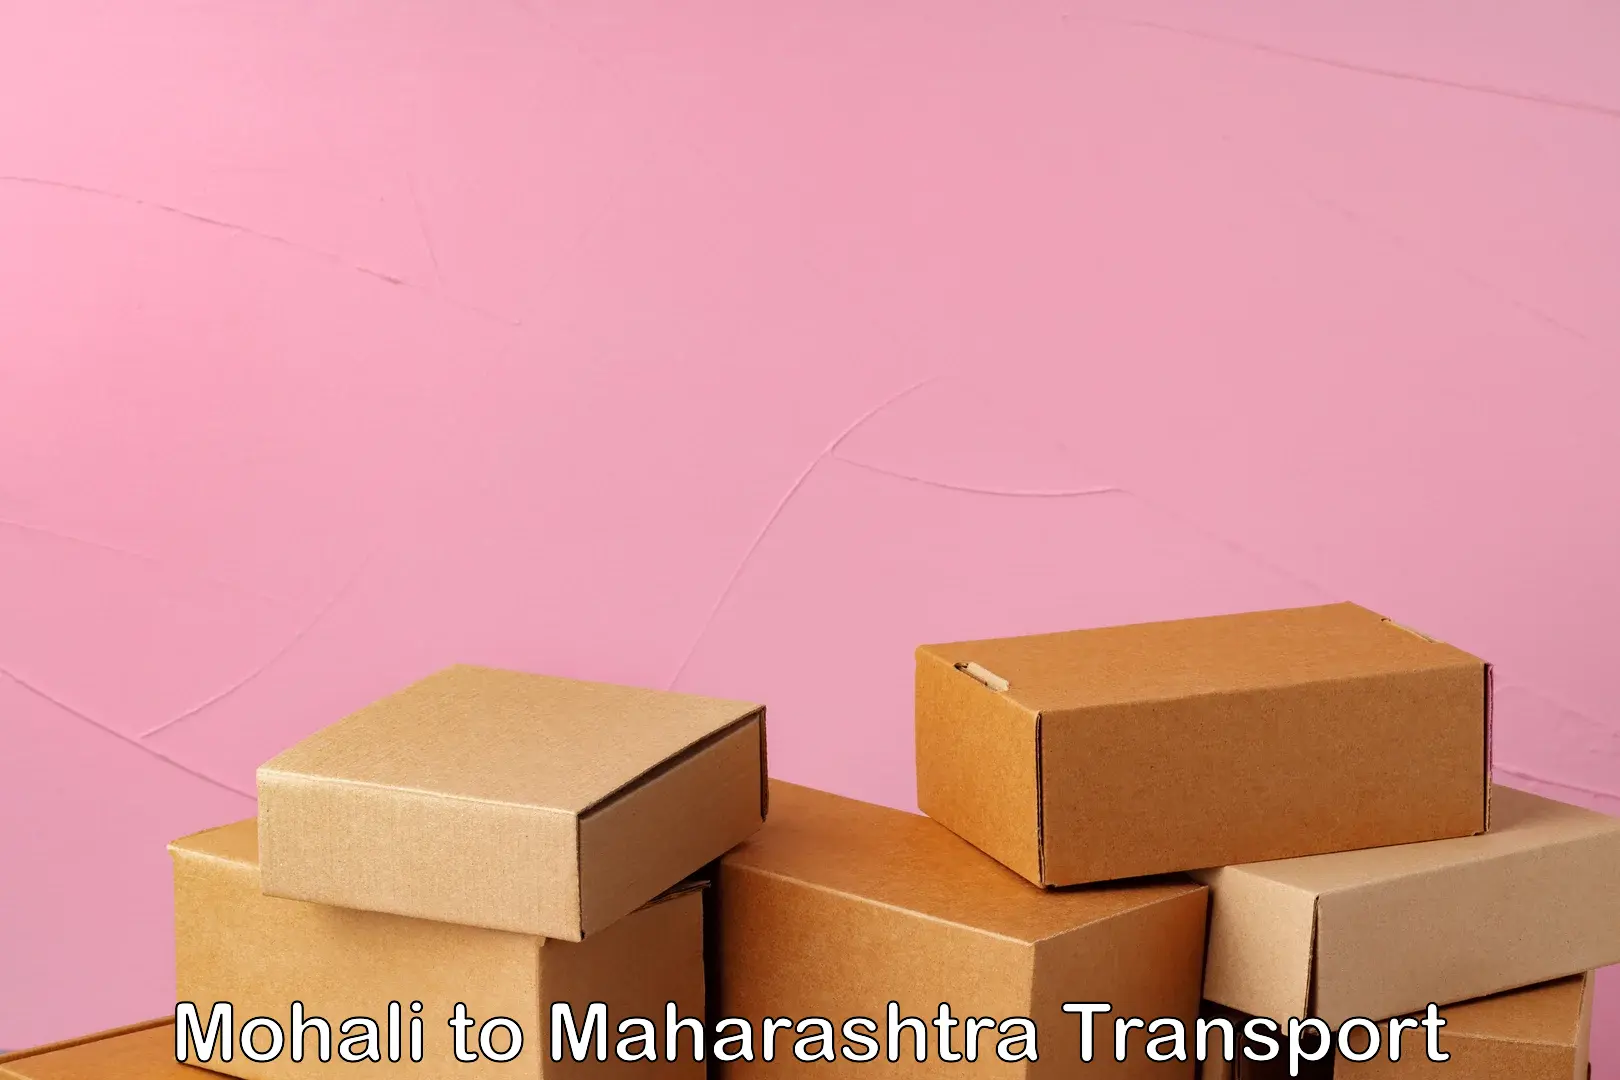 Nearest transport service Mohali to IIT Mumbai